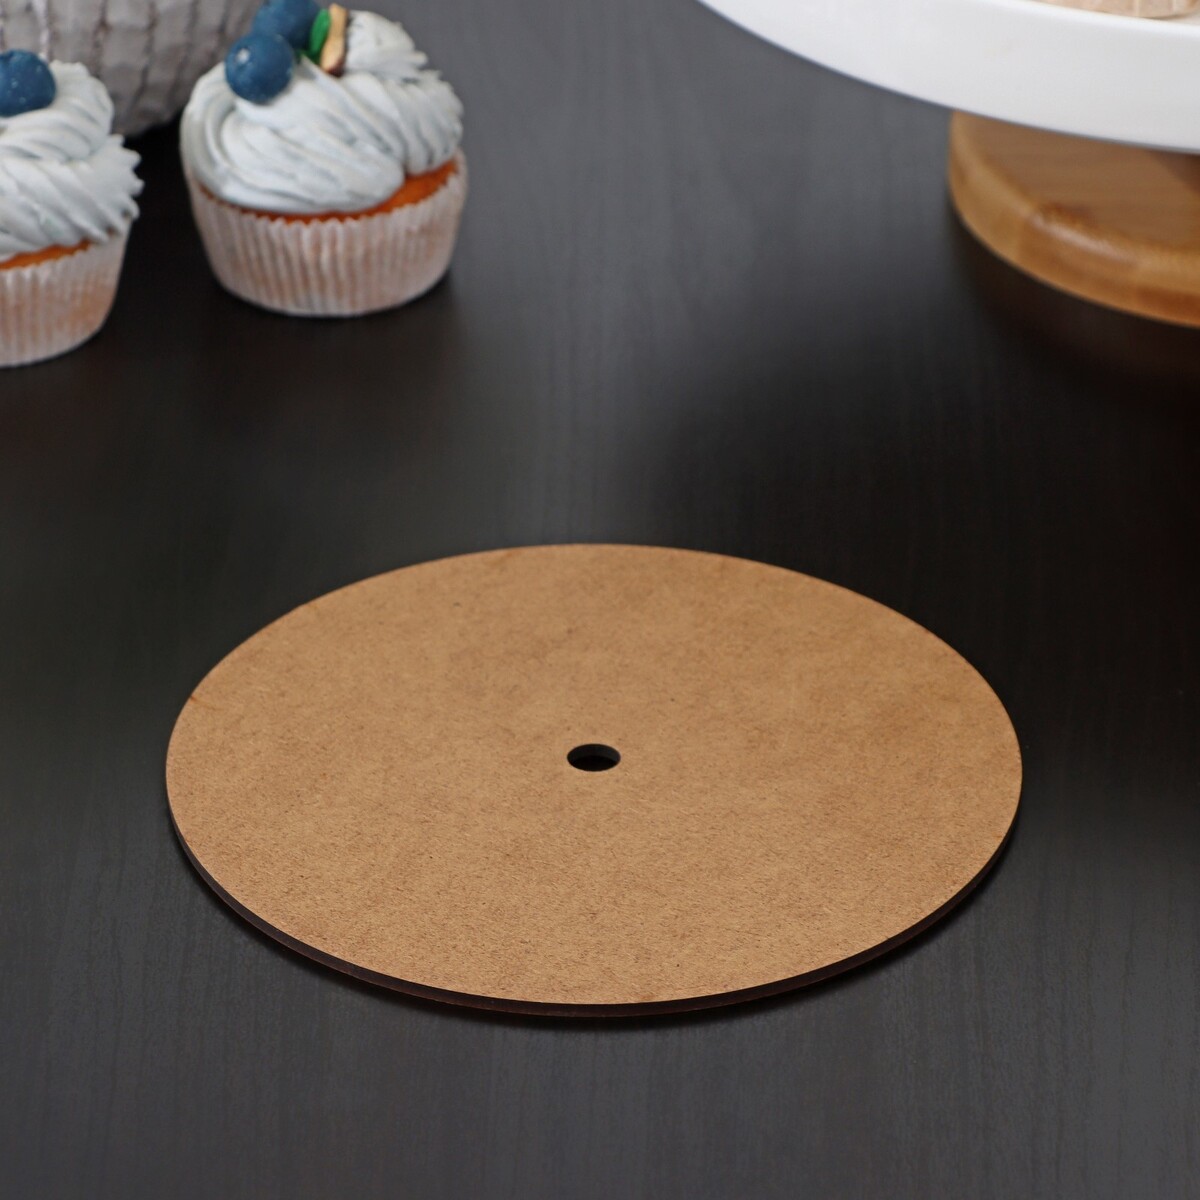 Подложка для торта с отверстием d=16 см, диаметр отверстия 1 см спил вяза шлифованный с одной стороны диаметр 18 20 см